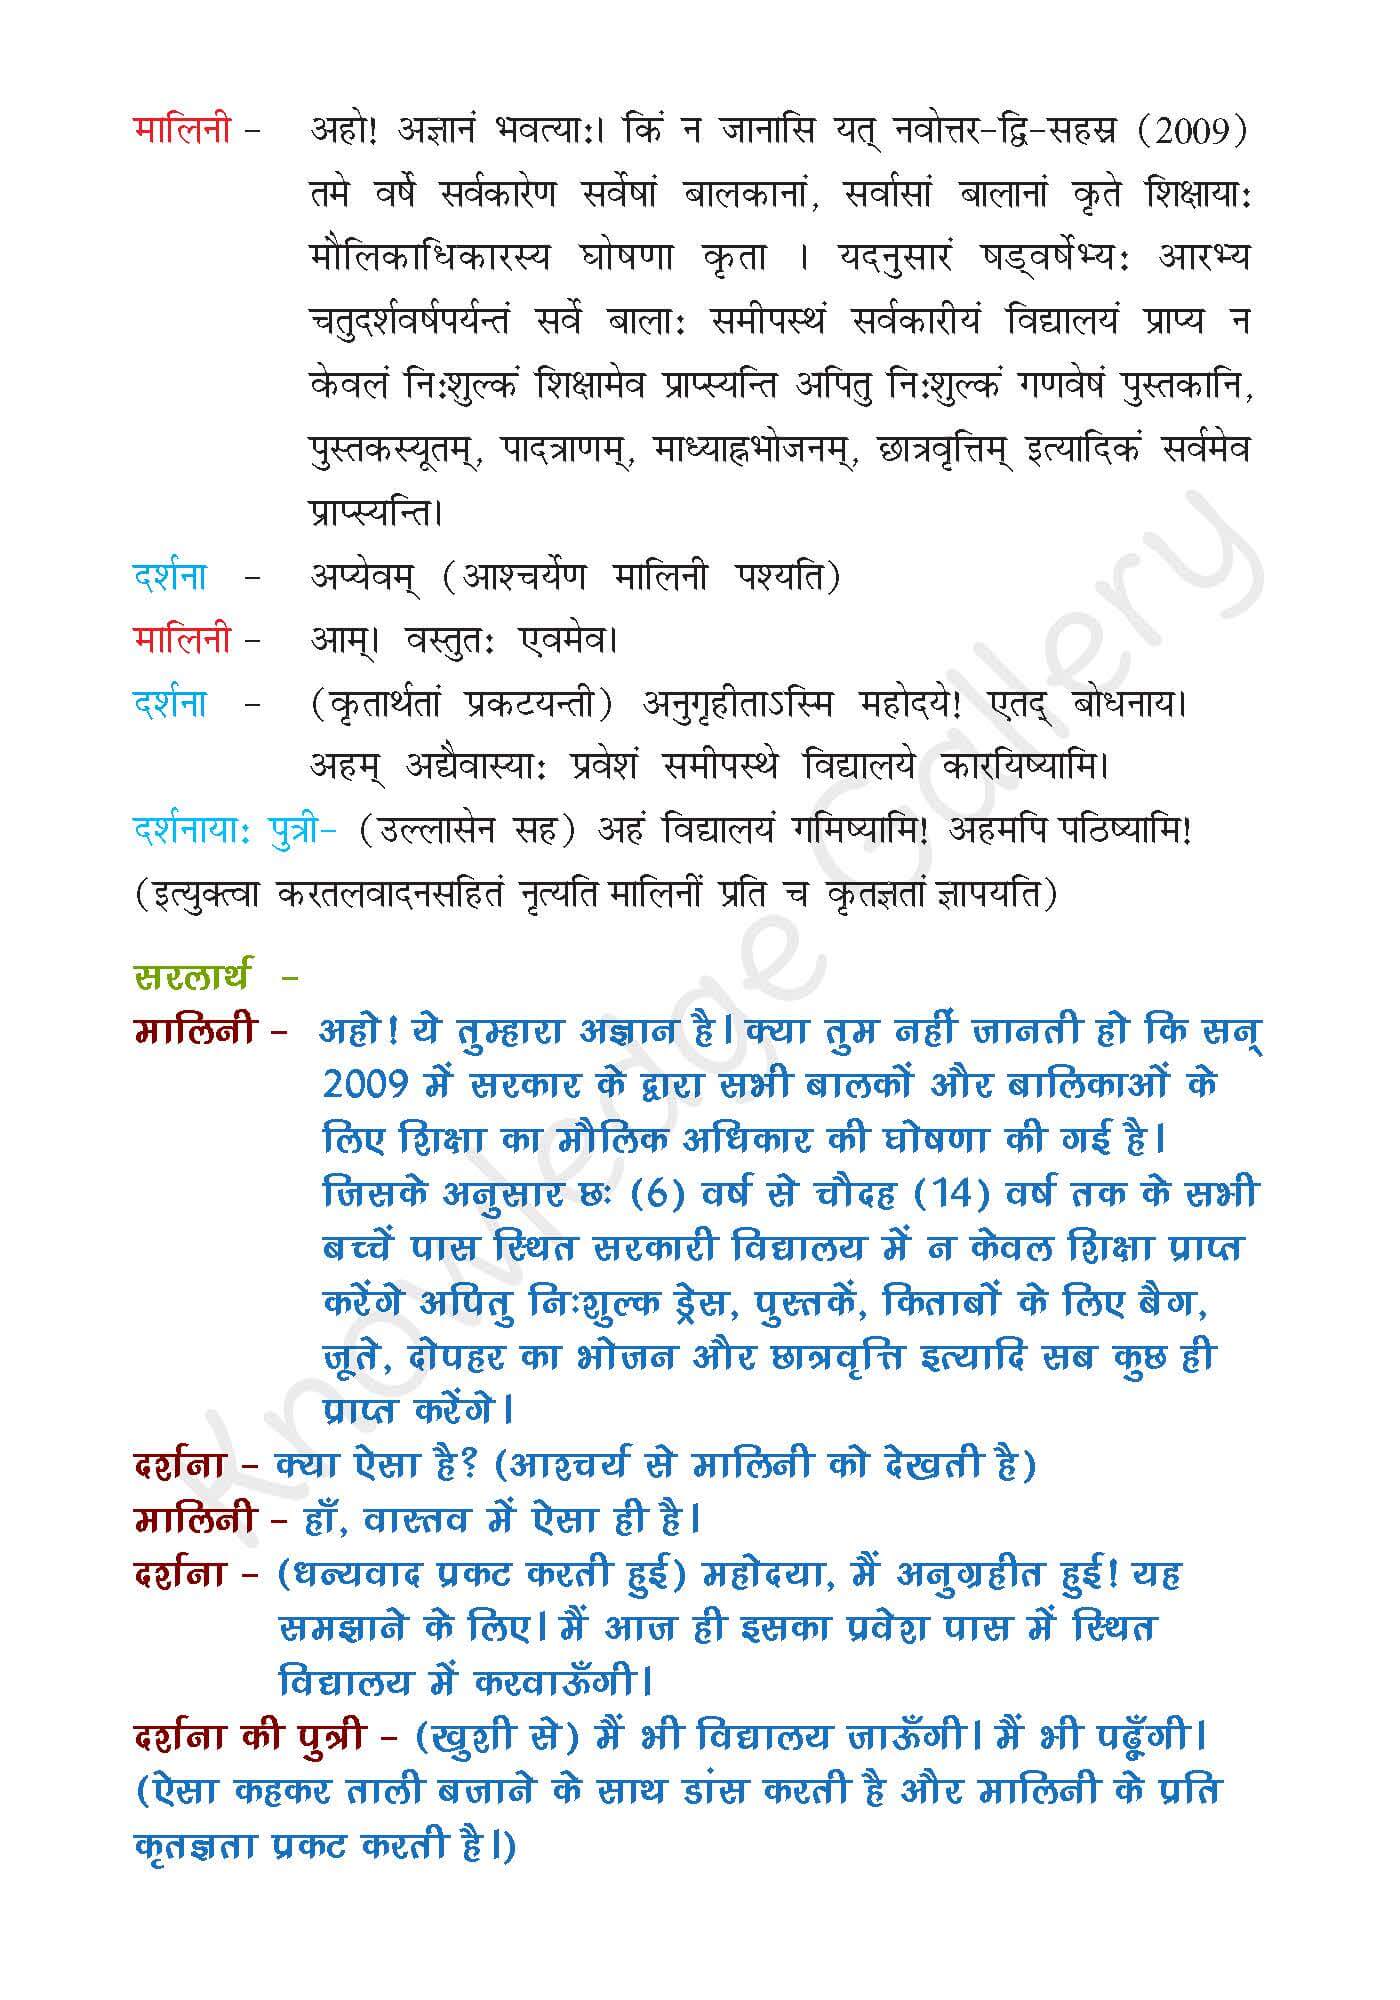 NCERT Solution For Class 7 Sanskrit Chapter 8 part 3